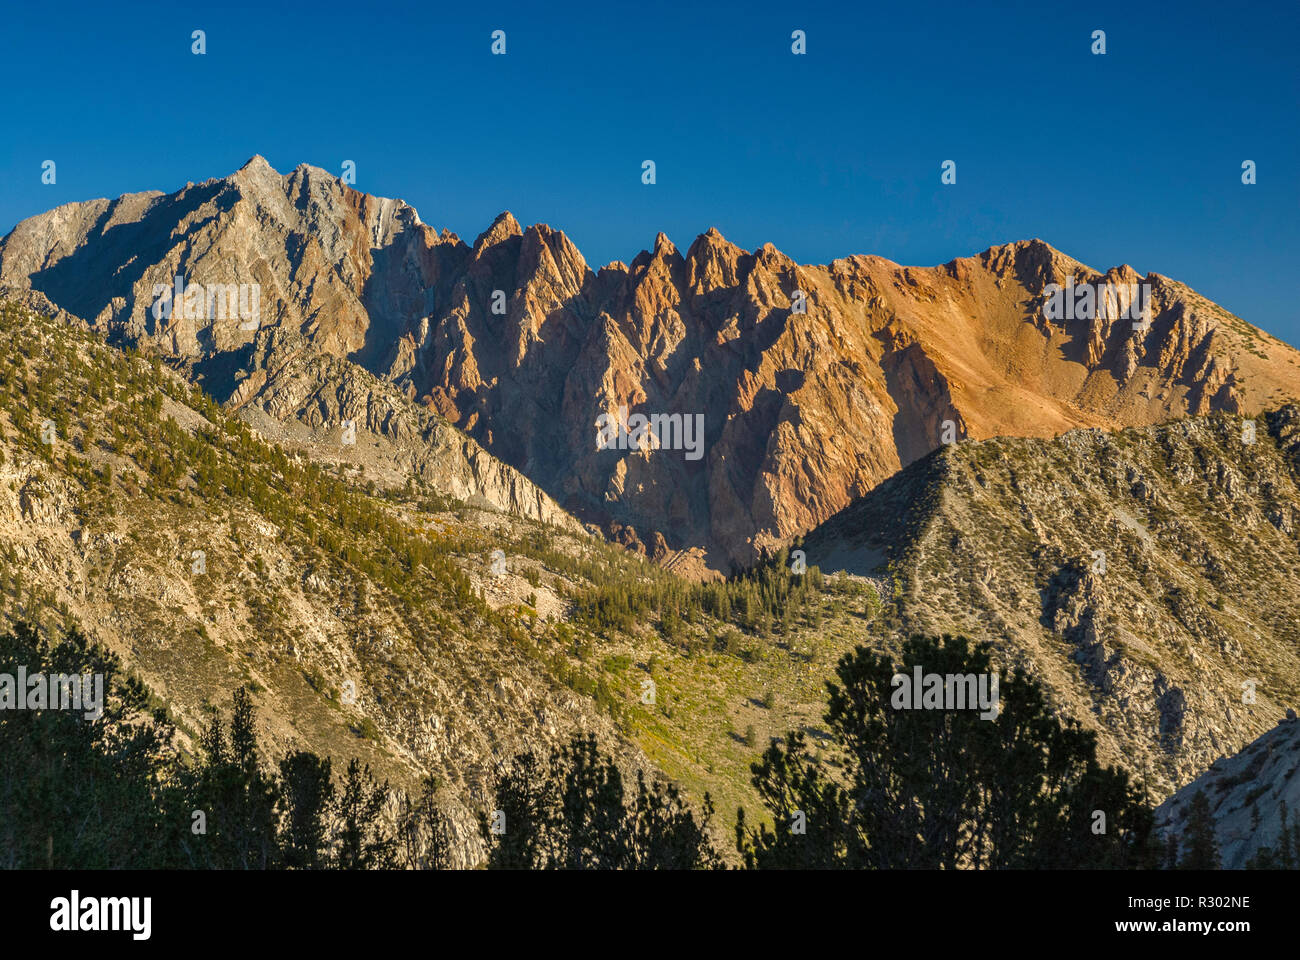 Mount Emerson und Piute Felsen, von den blauen See in Sabrina Becken gesehen, der östlichen Sierra Nevada, John Muir Wilderness, Kalifornien, USA Stockfoto